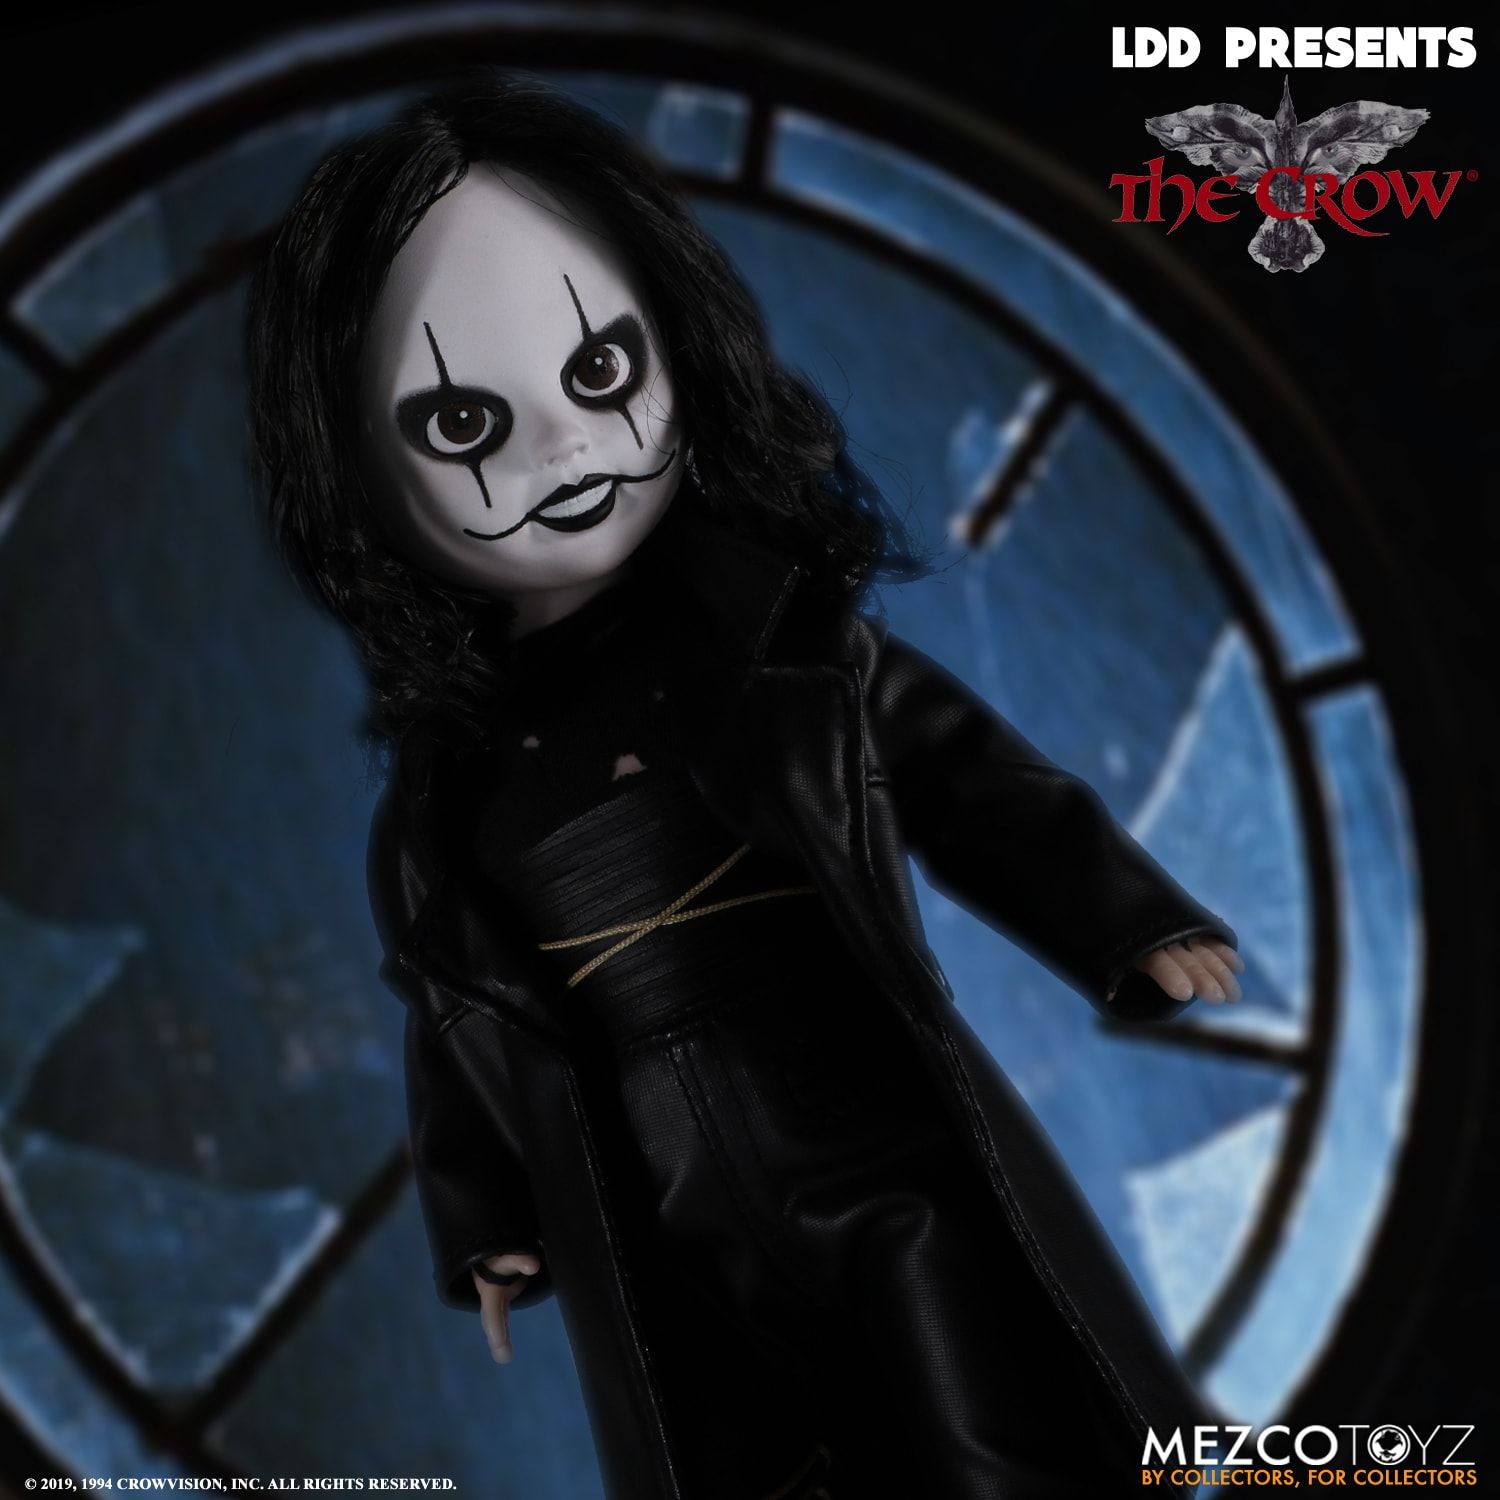 LDD 10" The Crow Doll Living Dead Dolls Presents Mezco 2020 